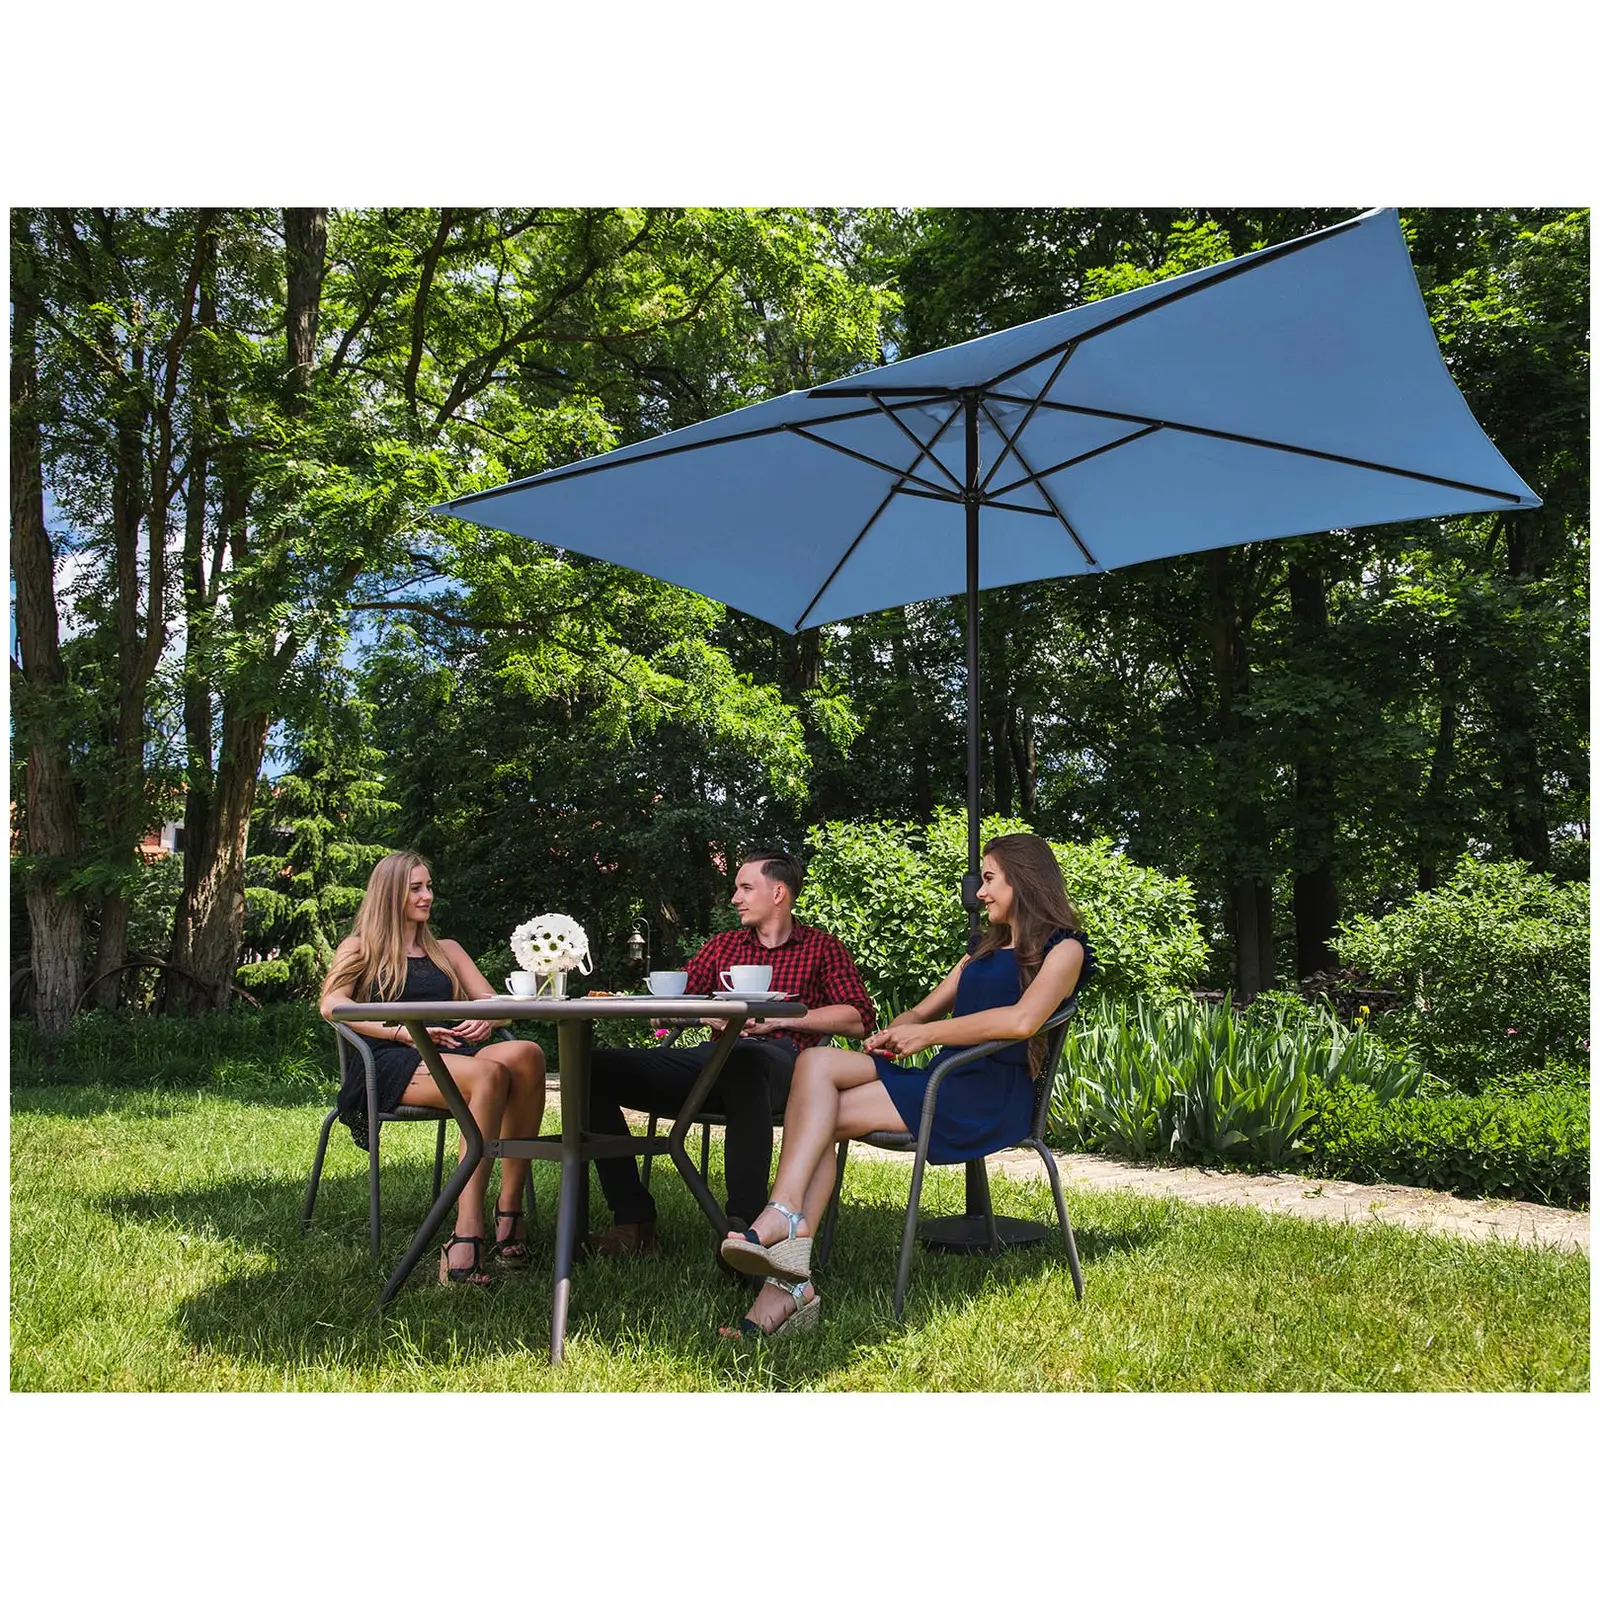 Large Outdoor Umbrella - blue - rectangular - 200 x 300 cm